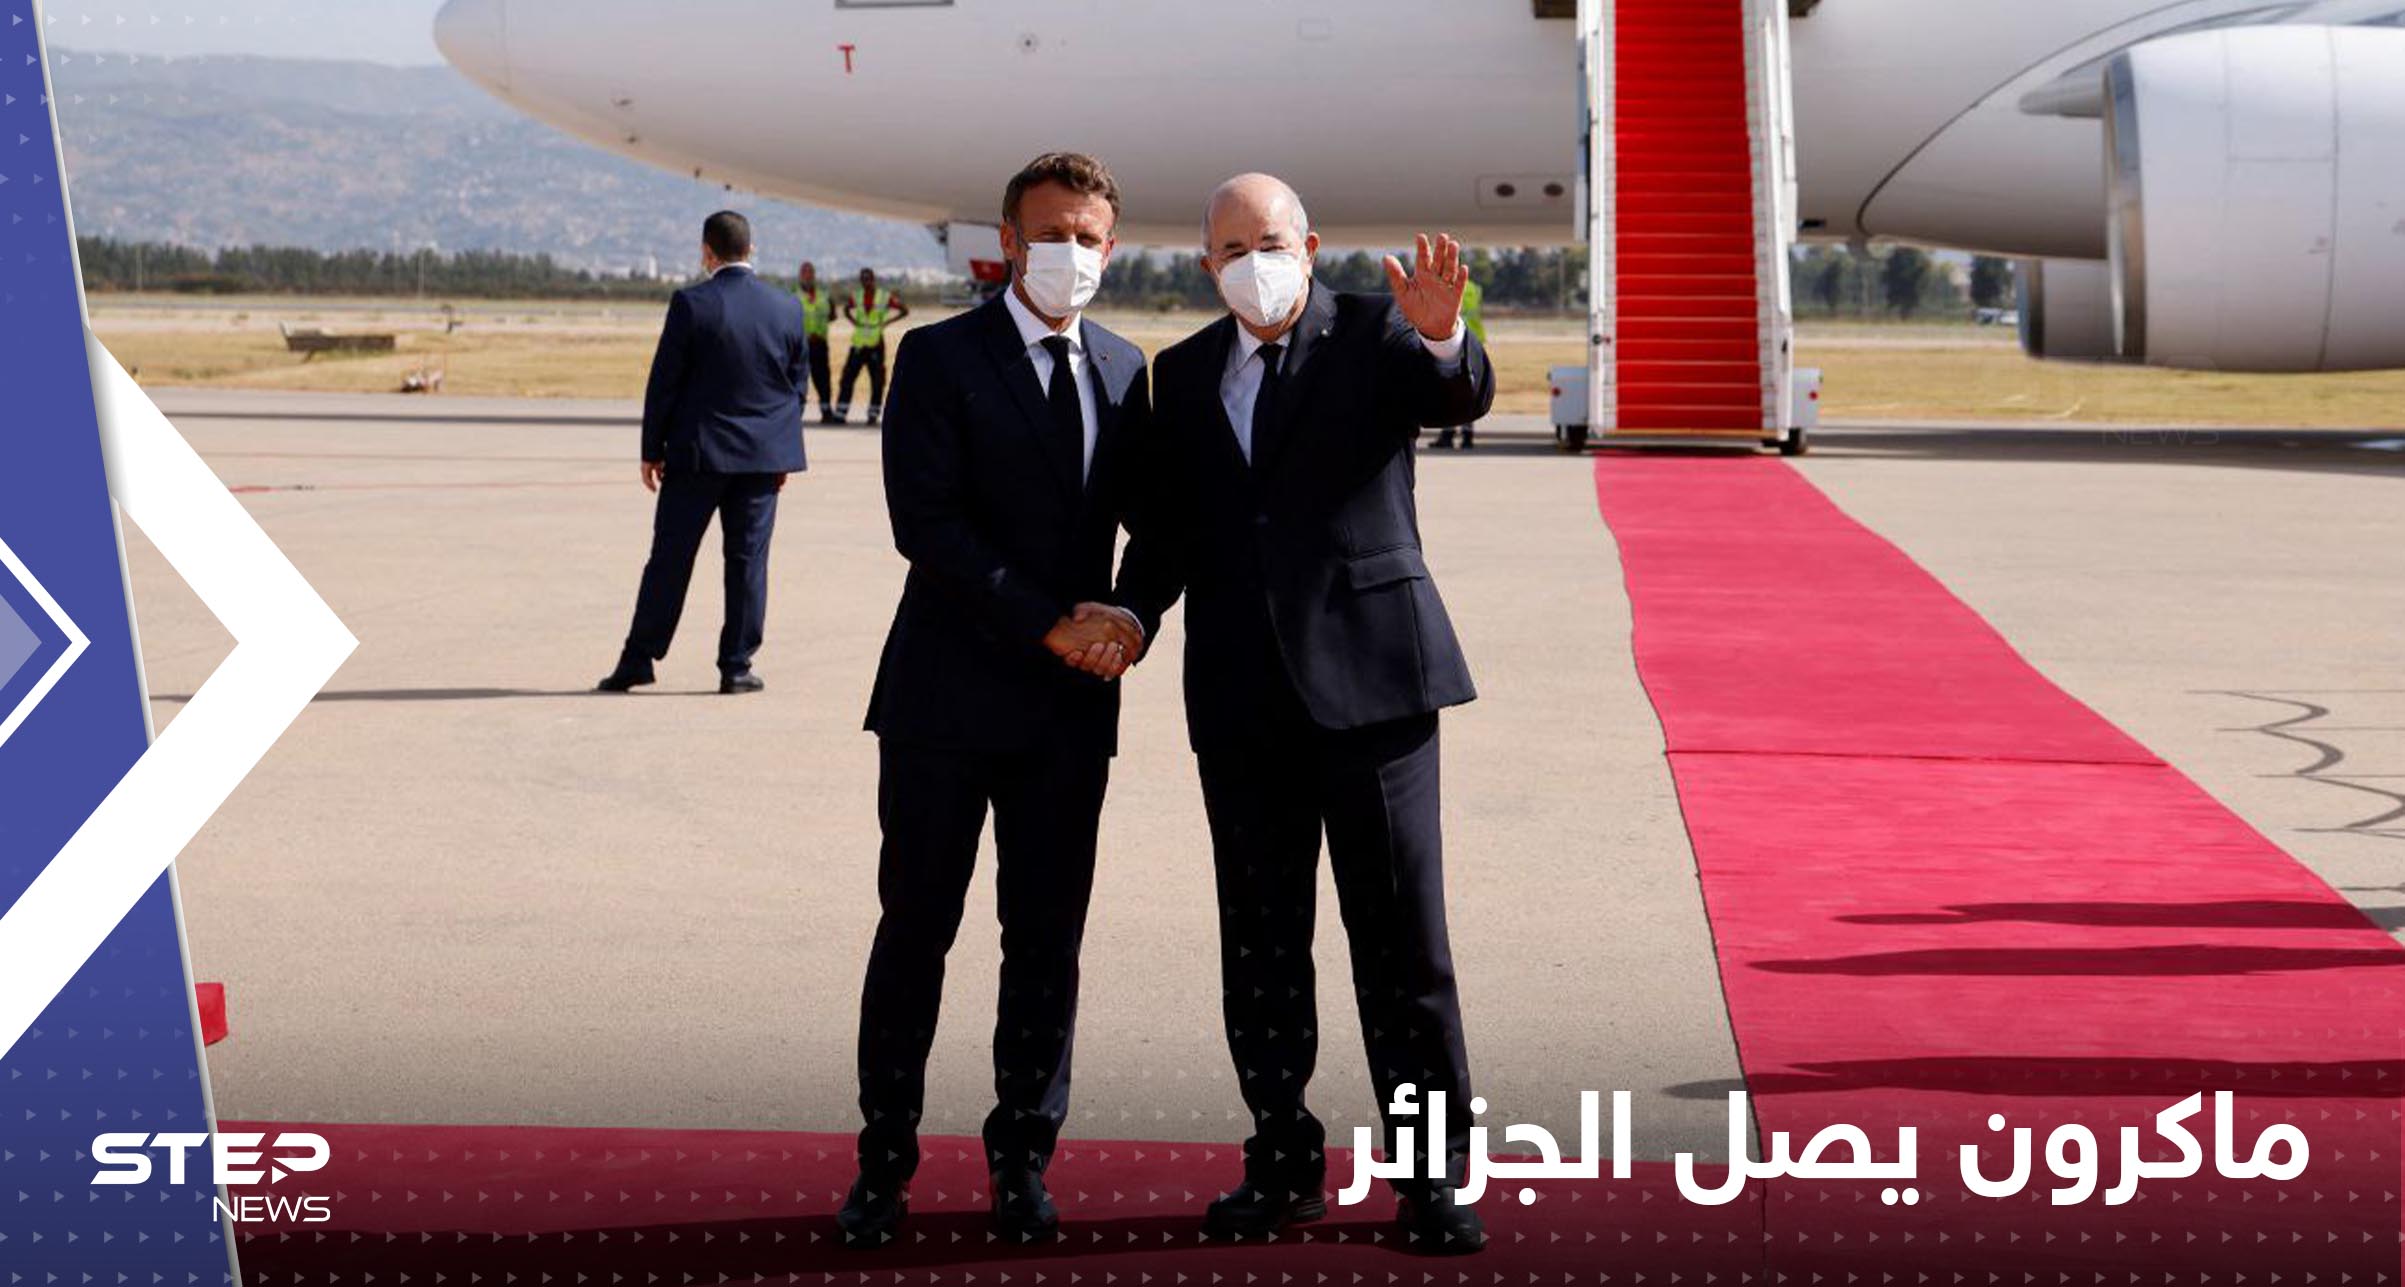 شاهد|| الرئيس الفرنسي ماكرون يصل الجزائر في زيارة رسمية لمدة 3 أيام